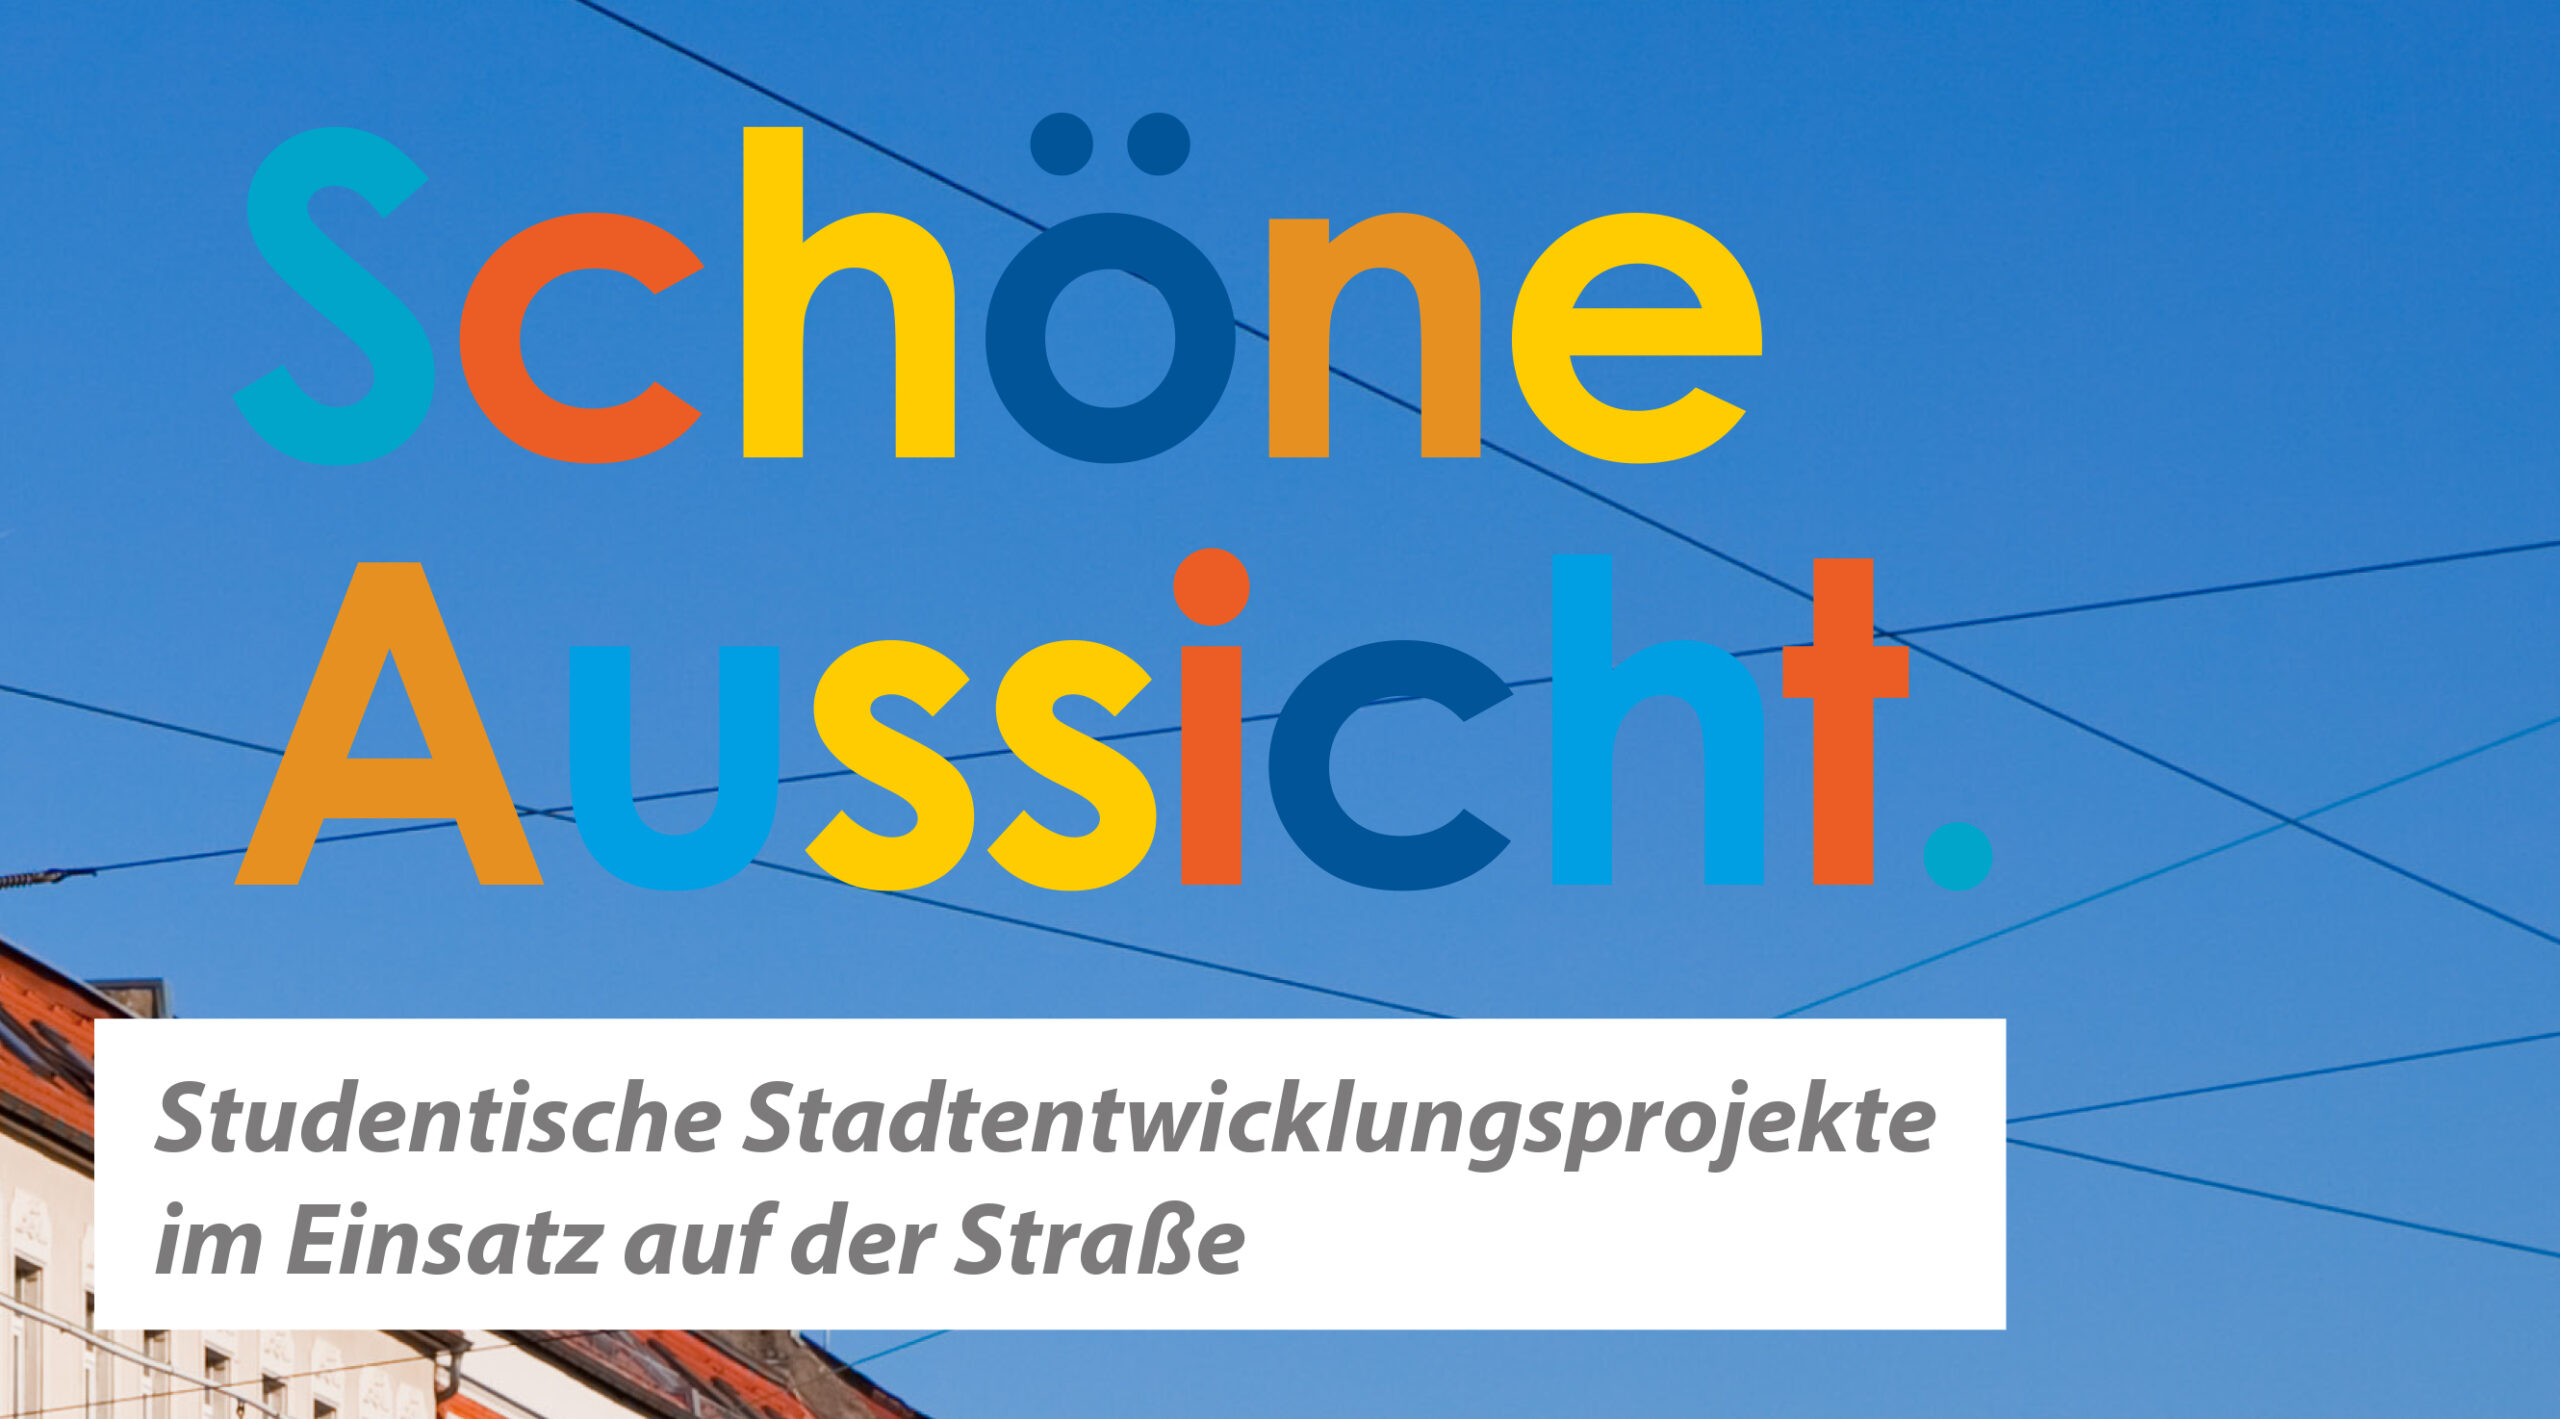 You are currently viewing Innovative Stadtentwicklungsprojekte in der Praxis: Studenten entwickeln die Georg-Schumann-Straße 2.0